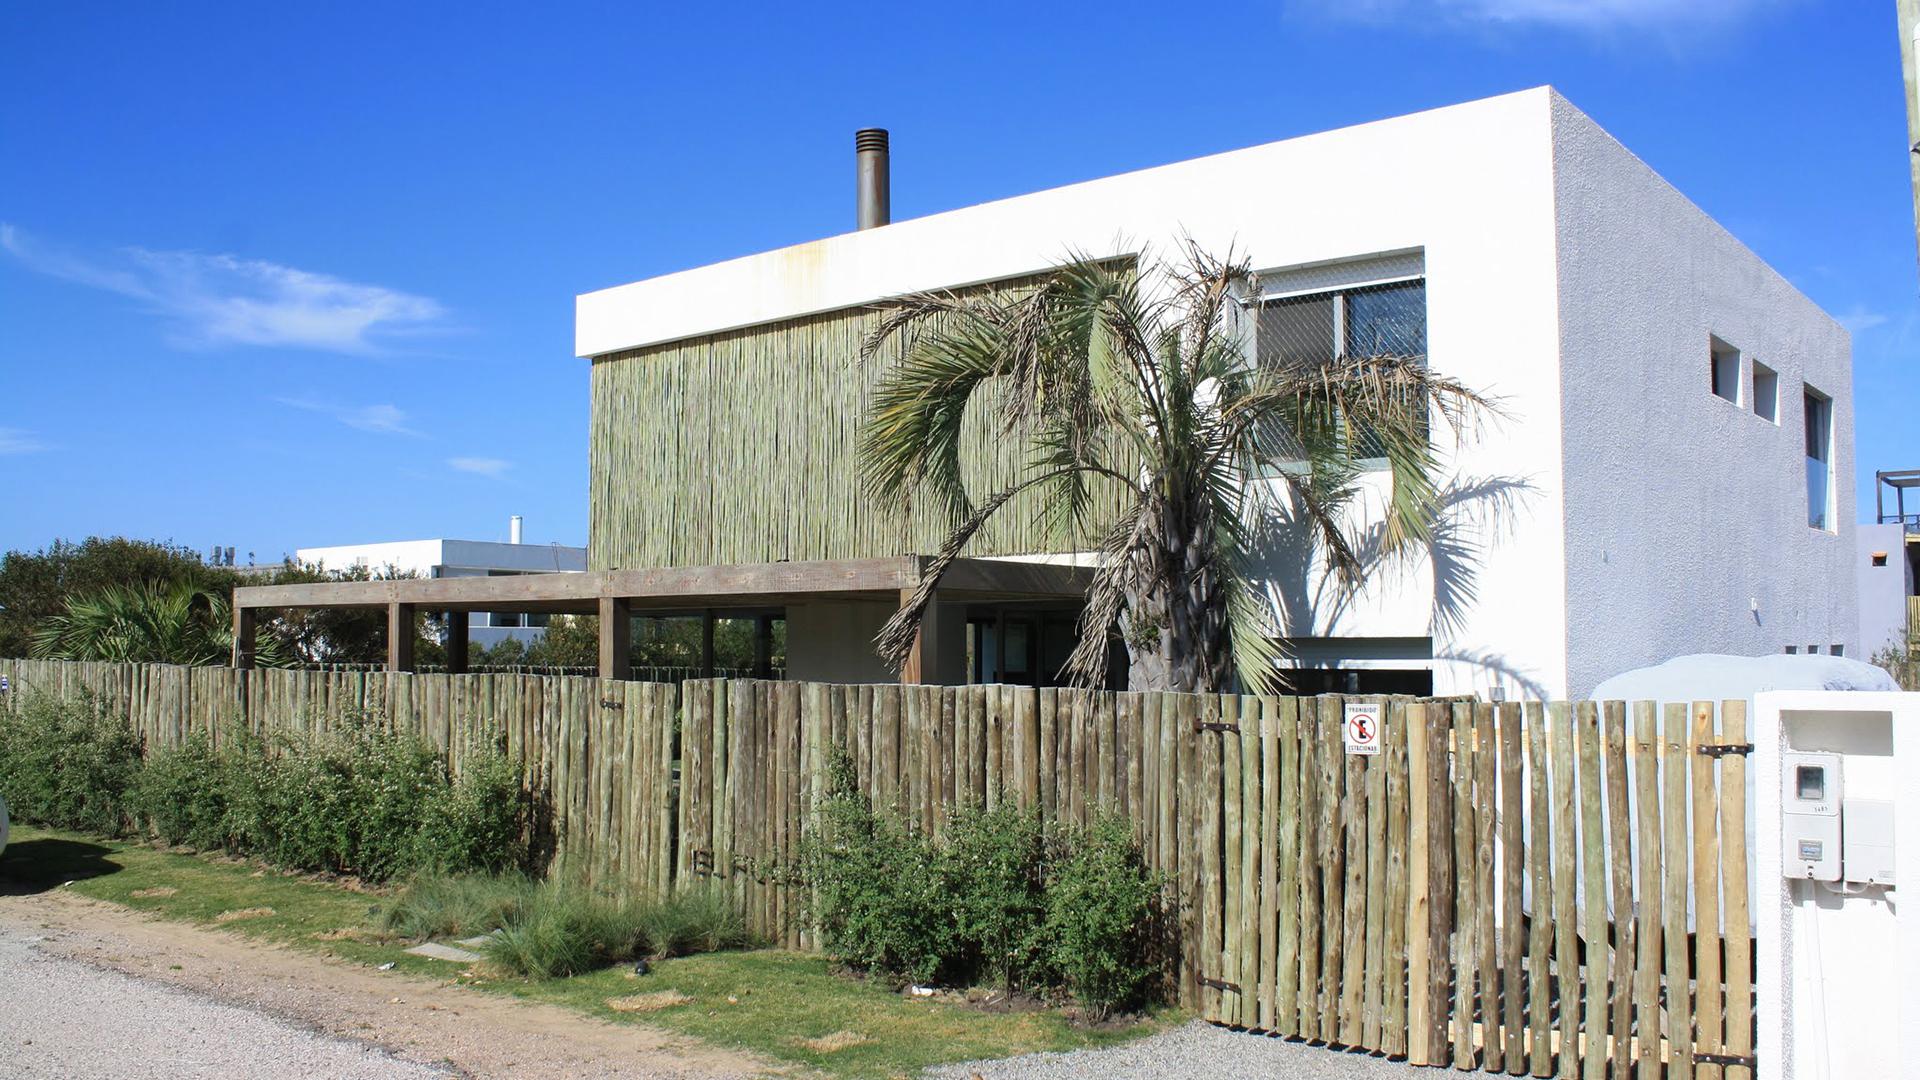 Modern Villa Walking Distance to the Beach located in Jose Ignacio, Punta del Este, Uruguay, listed by Curiocity Villas.